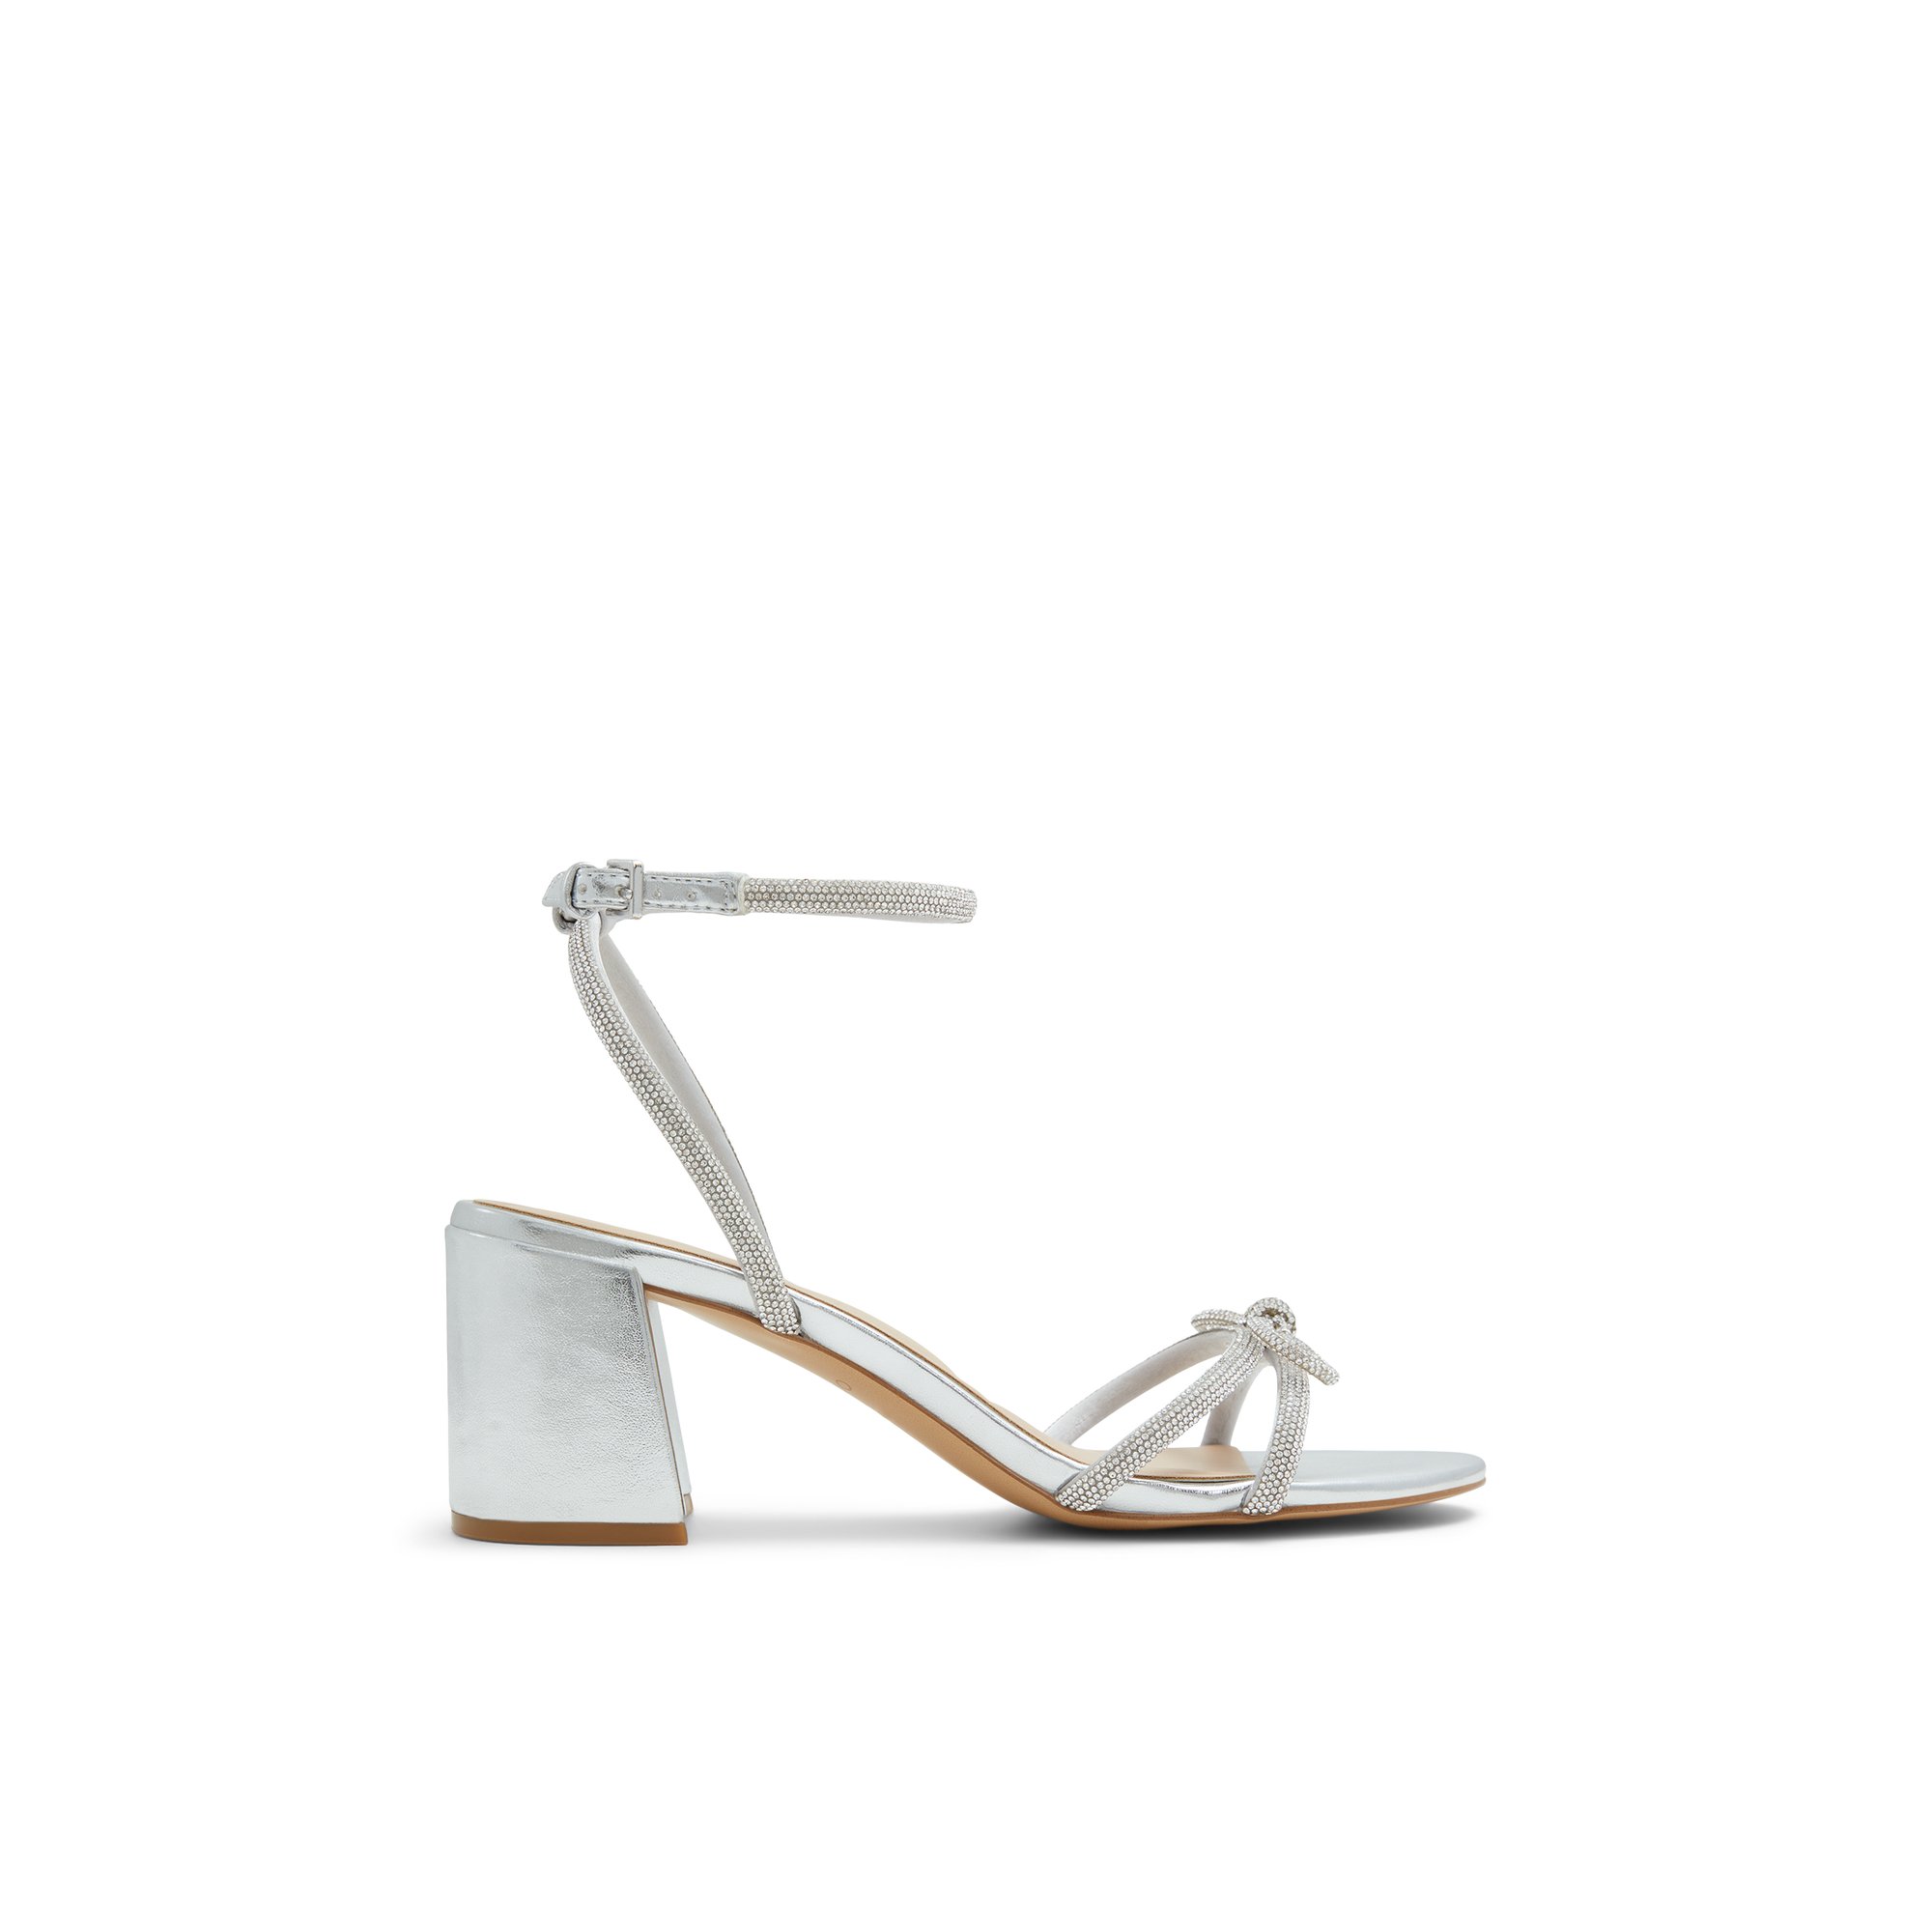 ALDO Bouclette - Women's Sandals Strappy - Silver